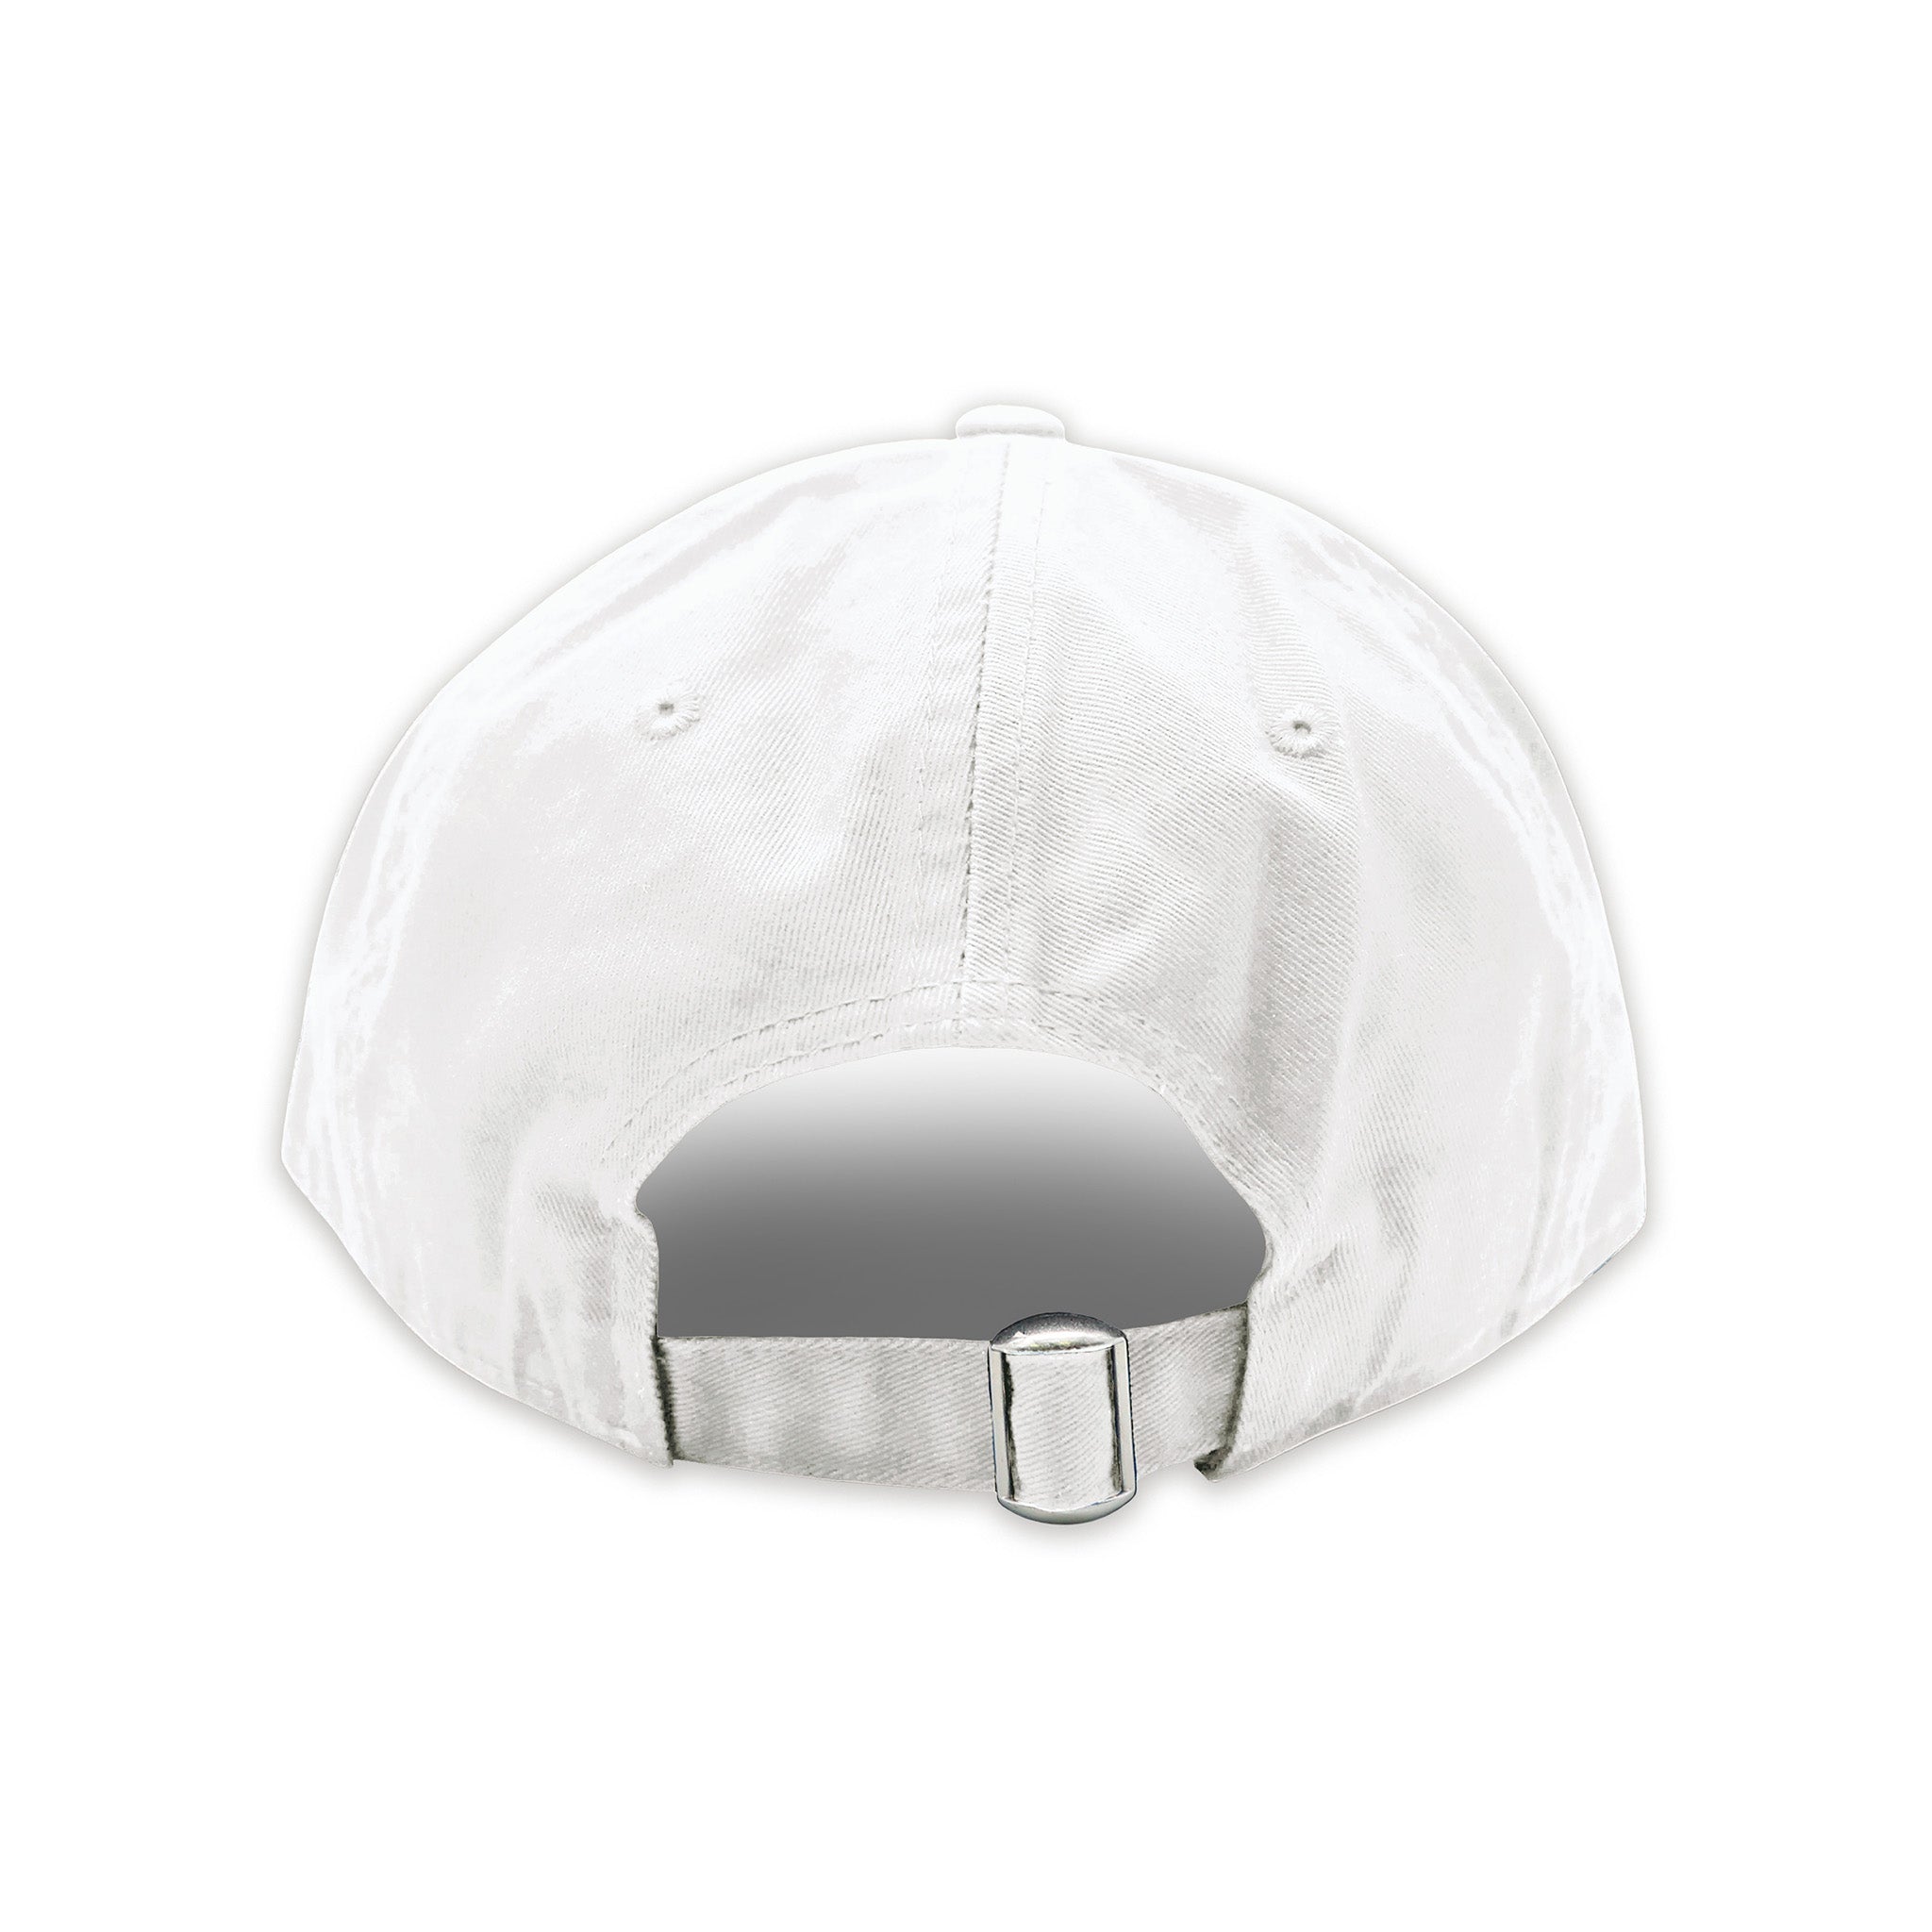 TCU Hat (White)